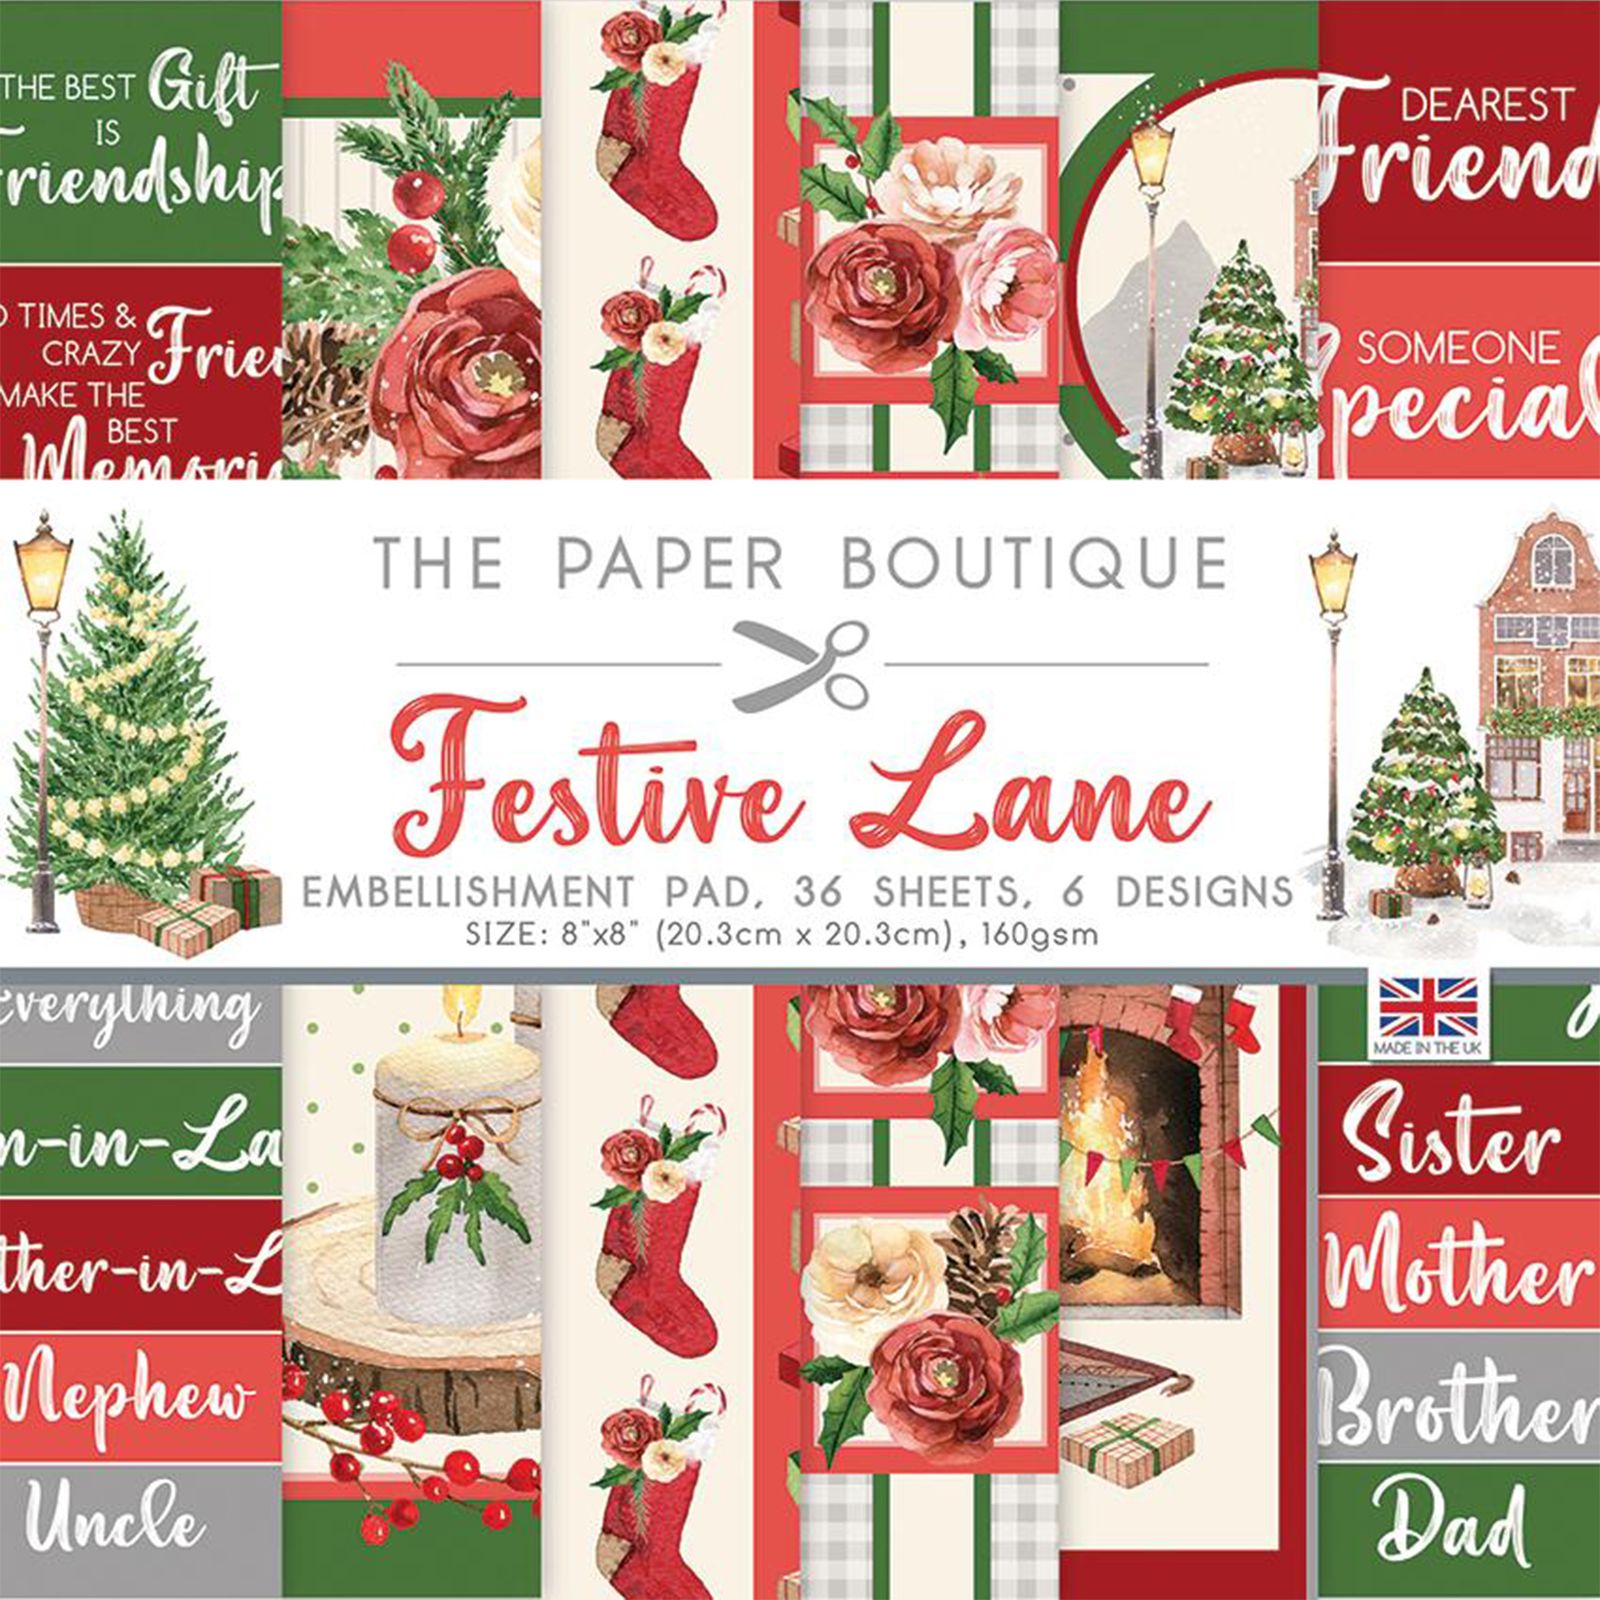 The Paper Boutique • Festive lane embellishments pad